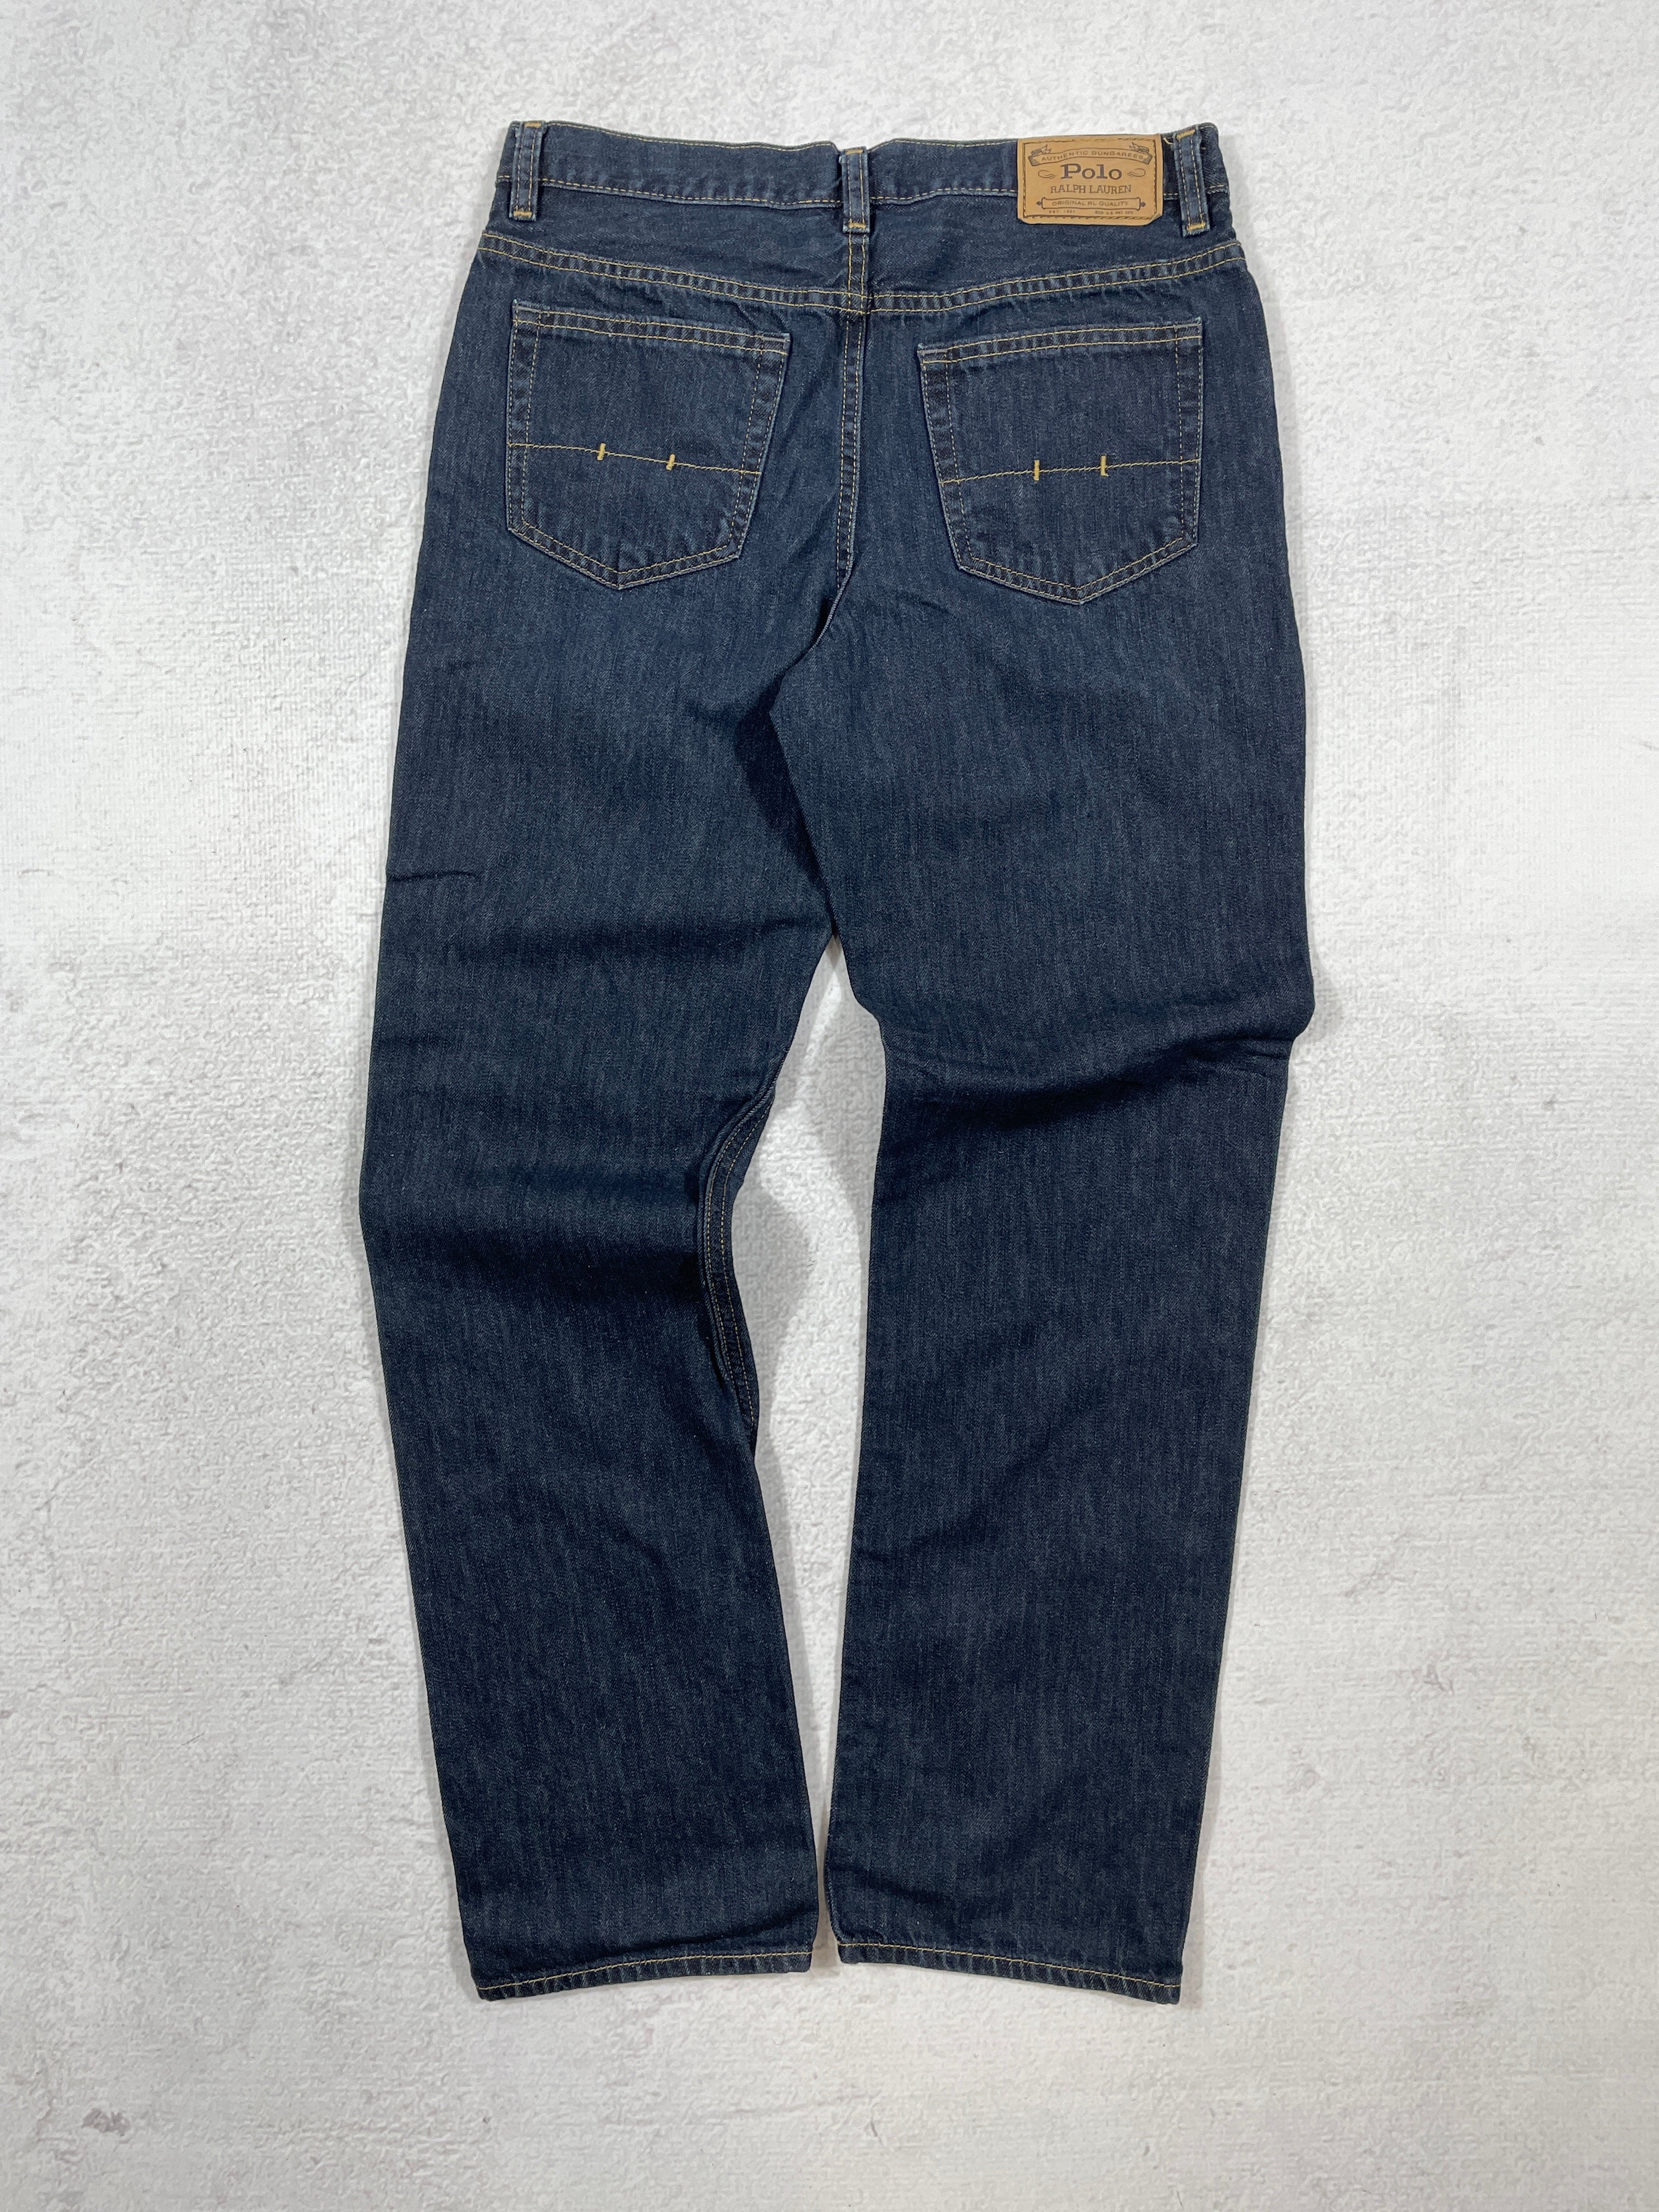 Vintage Polo Ralph Lauren Jeans - Women's 24Wx28L